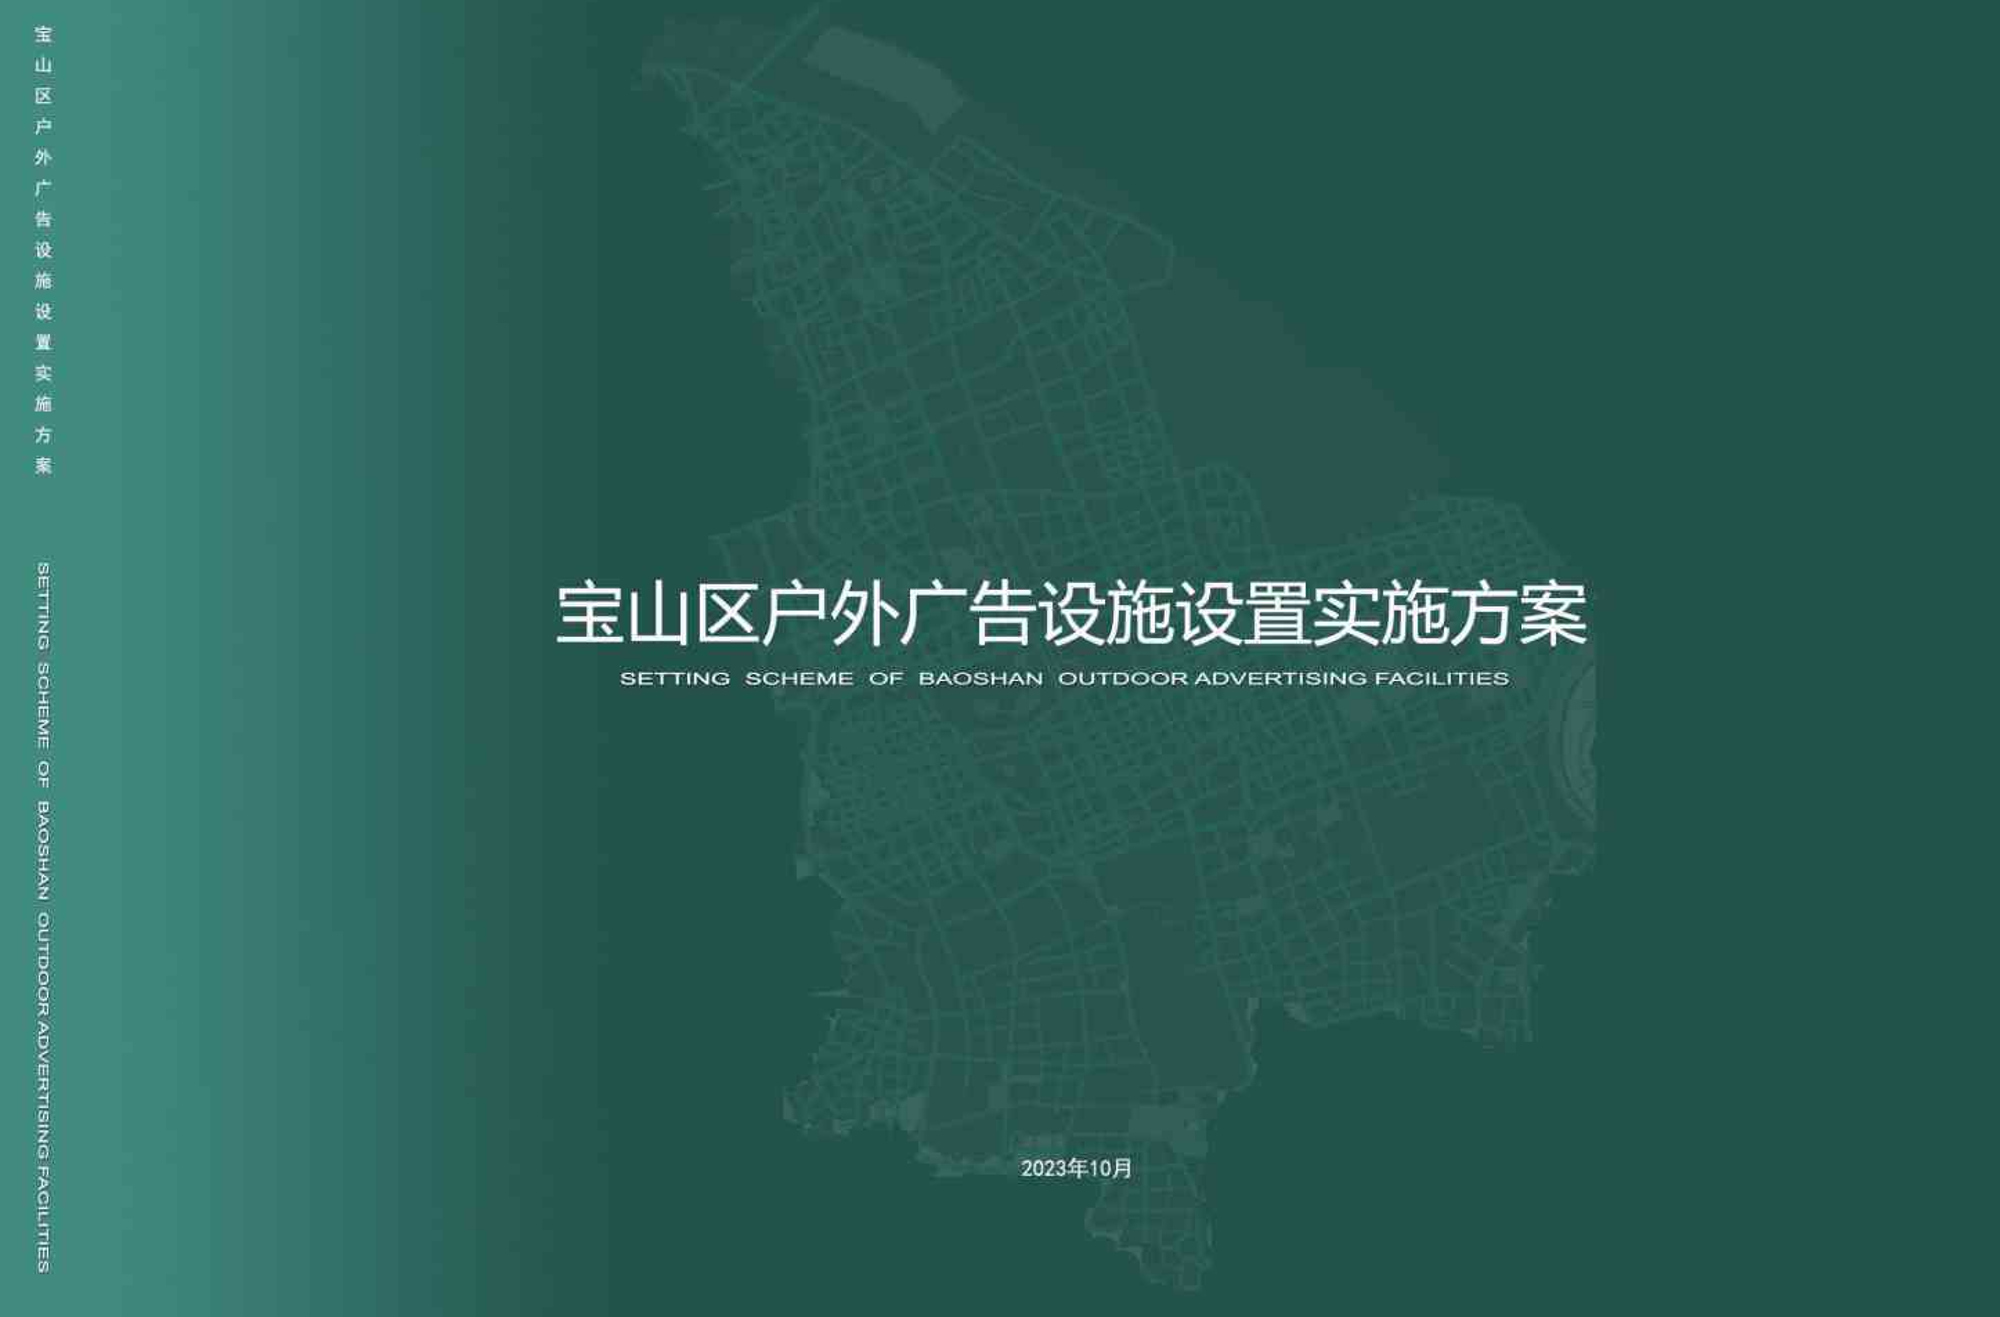 2023年宝山区户外广告设施设置实施方案.pdf